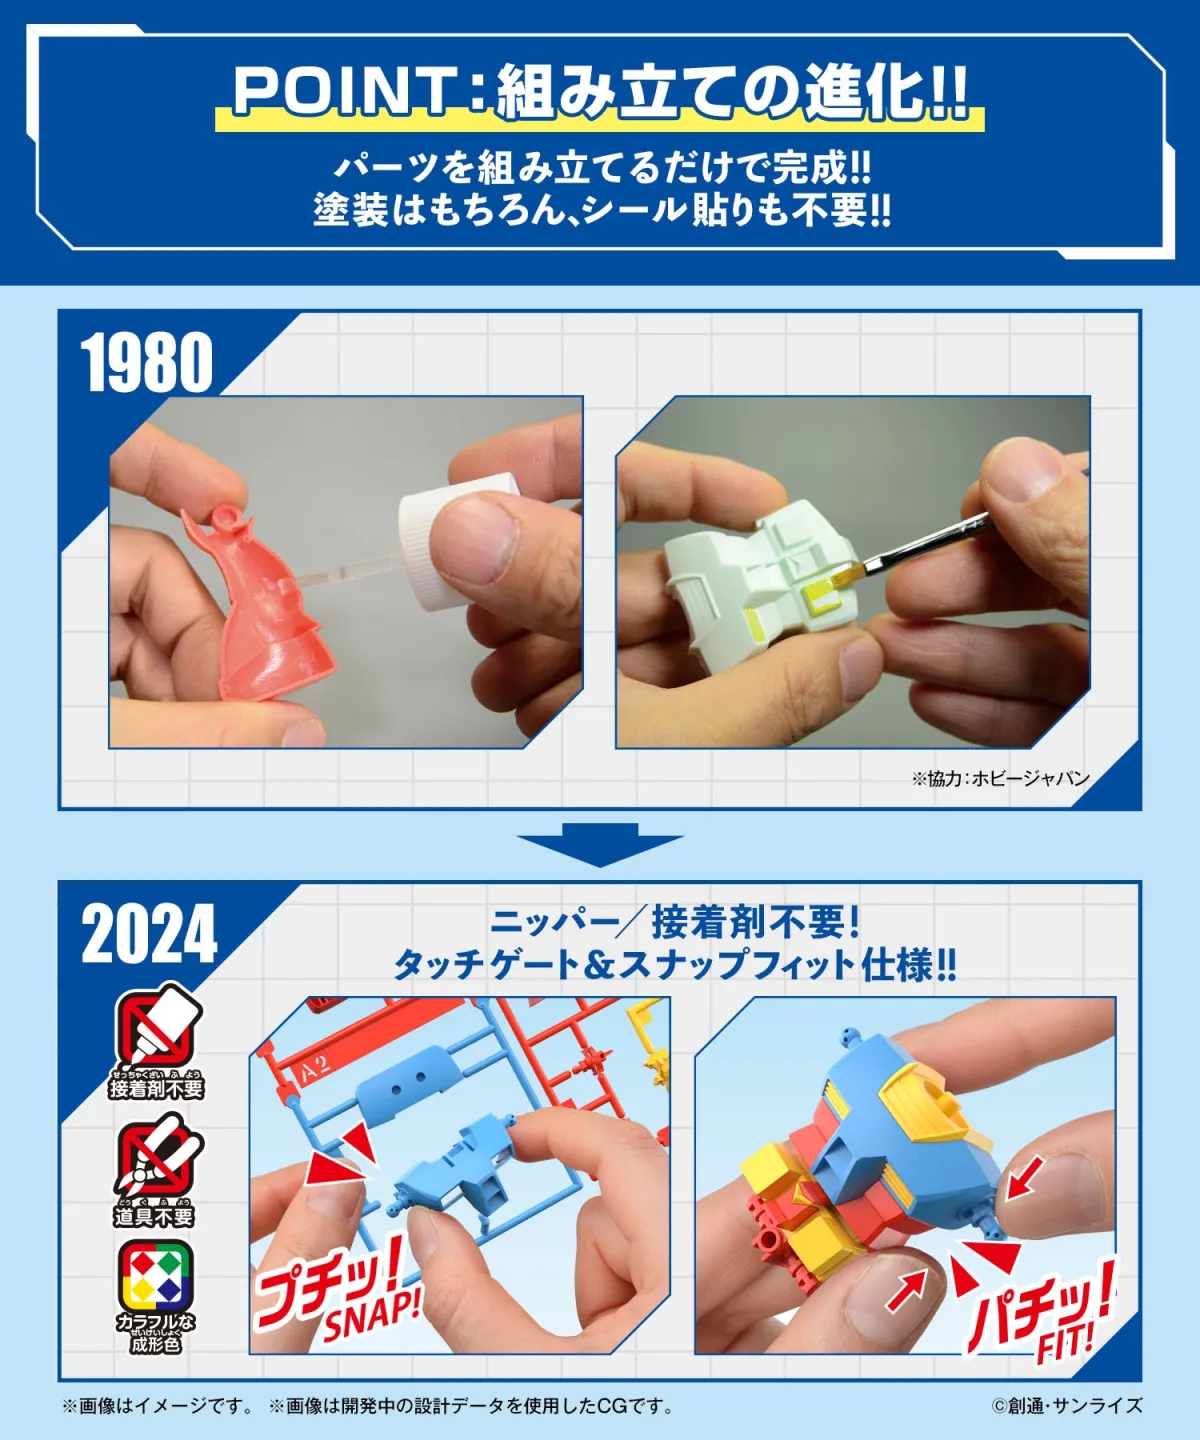 Kluczowe punkty zestawu do ożywienia modelu Gundam 1980 2024 2